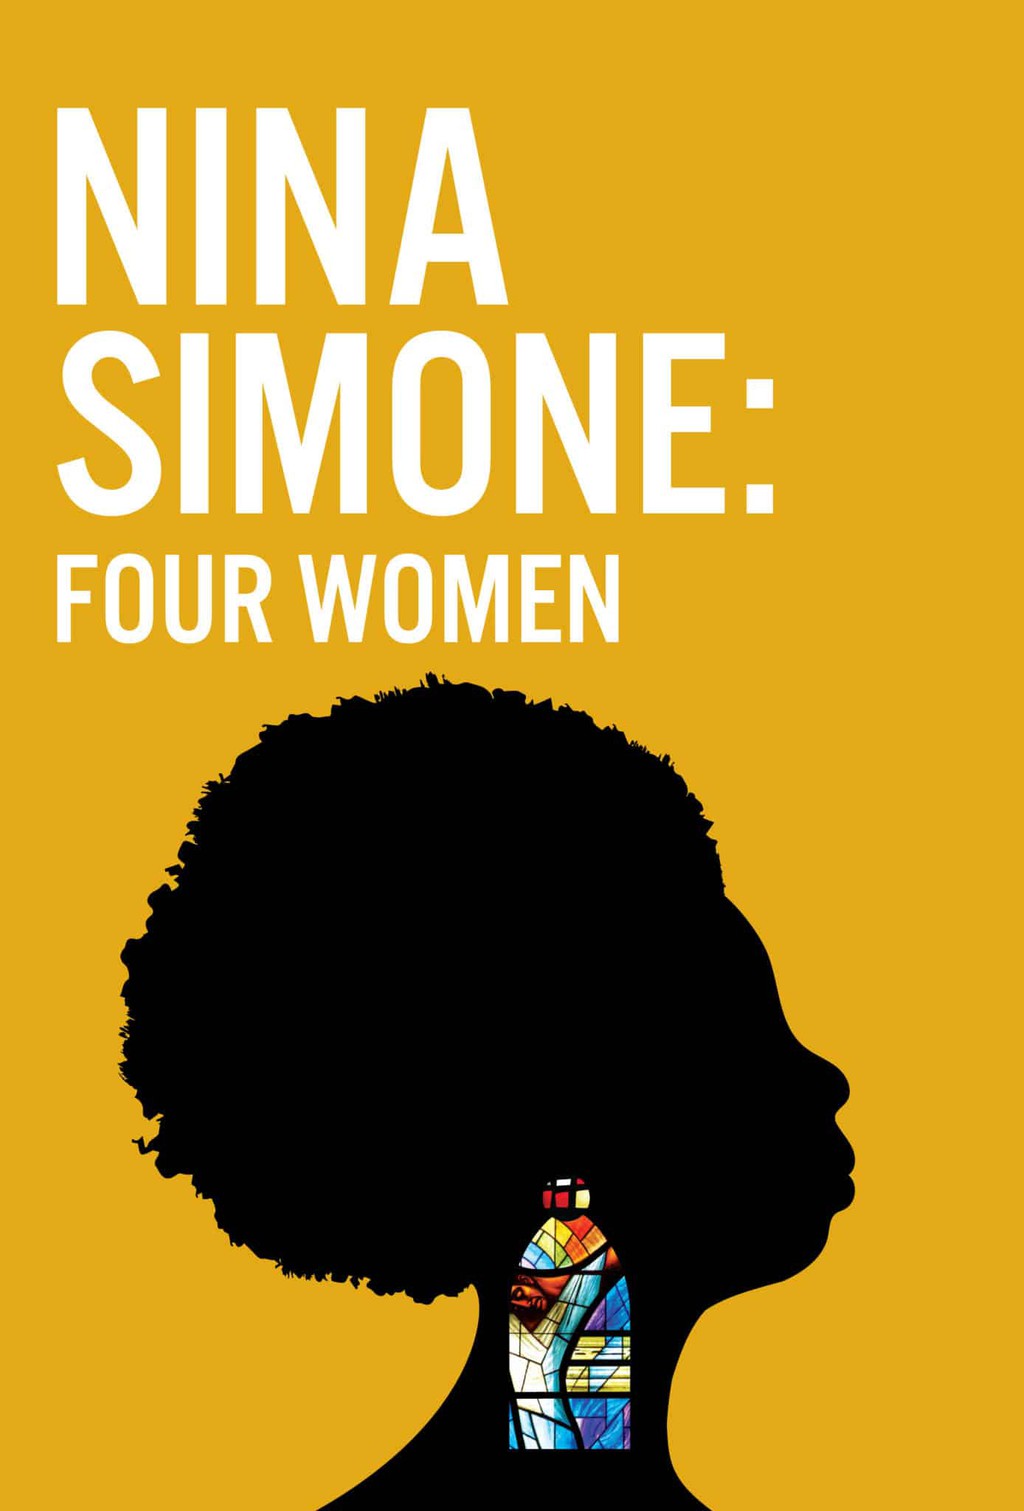 Kiệt tác “Wild Is The Wind” của giọng ca quý hiếm chạm đến sự hoàn hảo - Nina Simone  ảnh 3